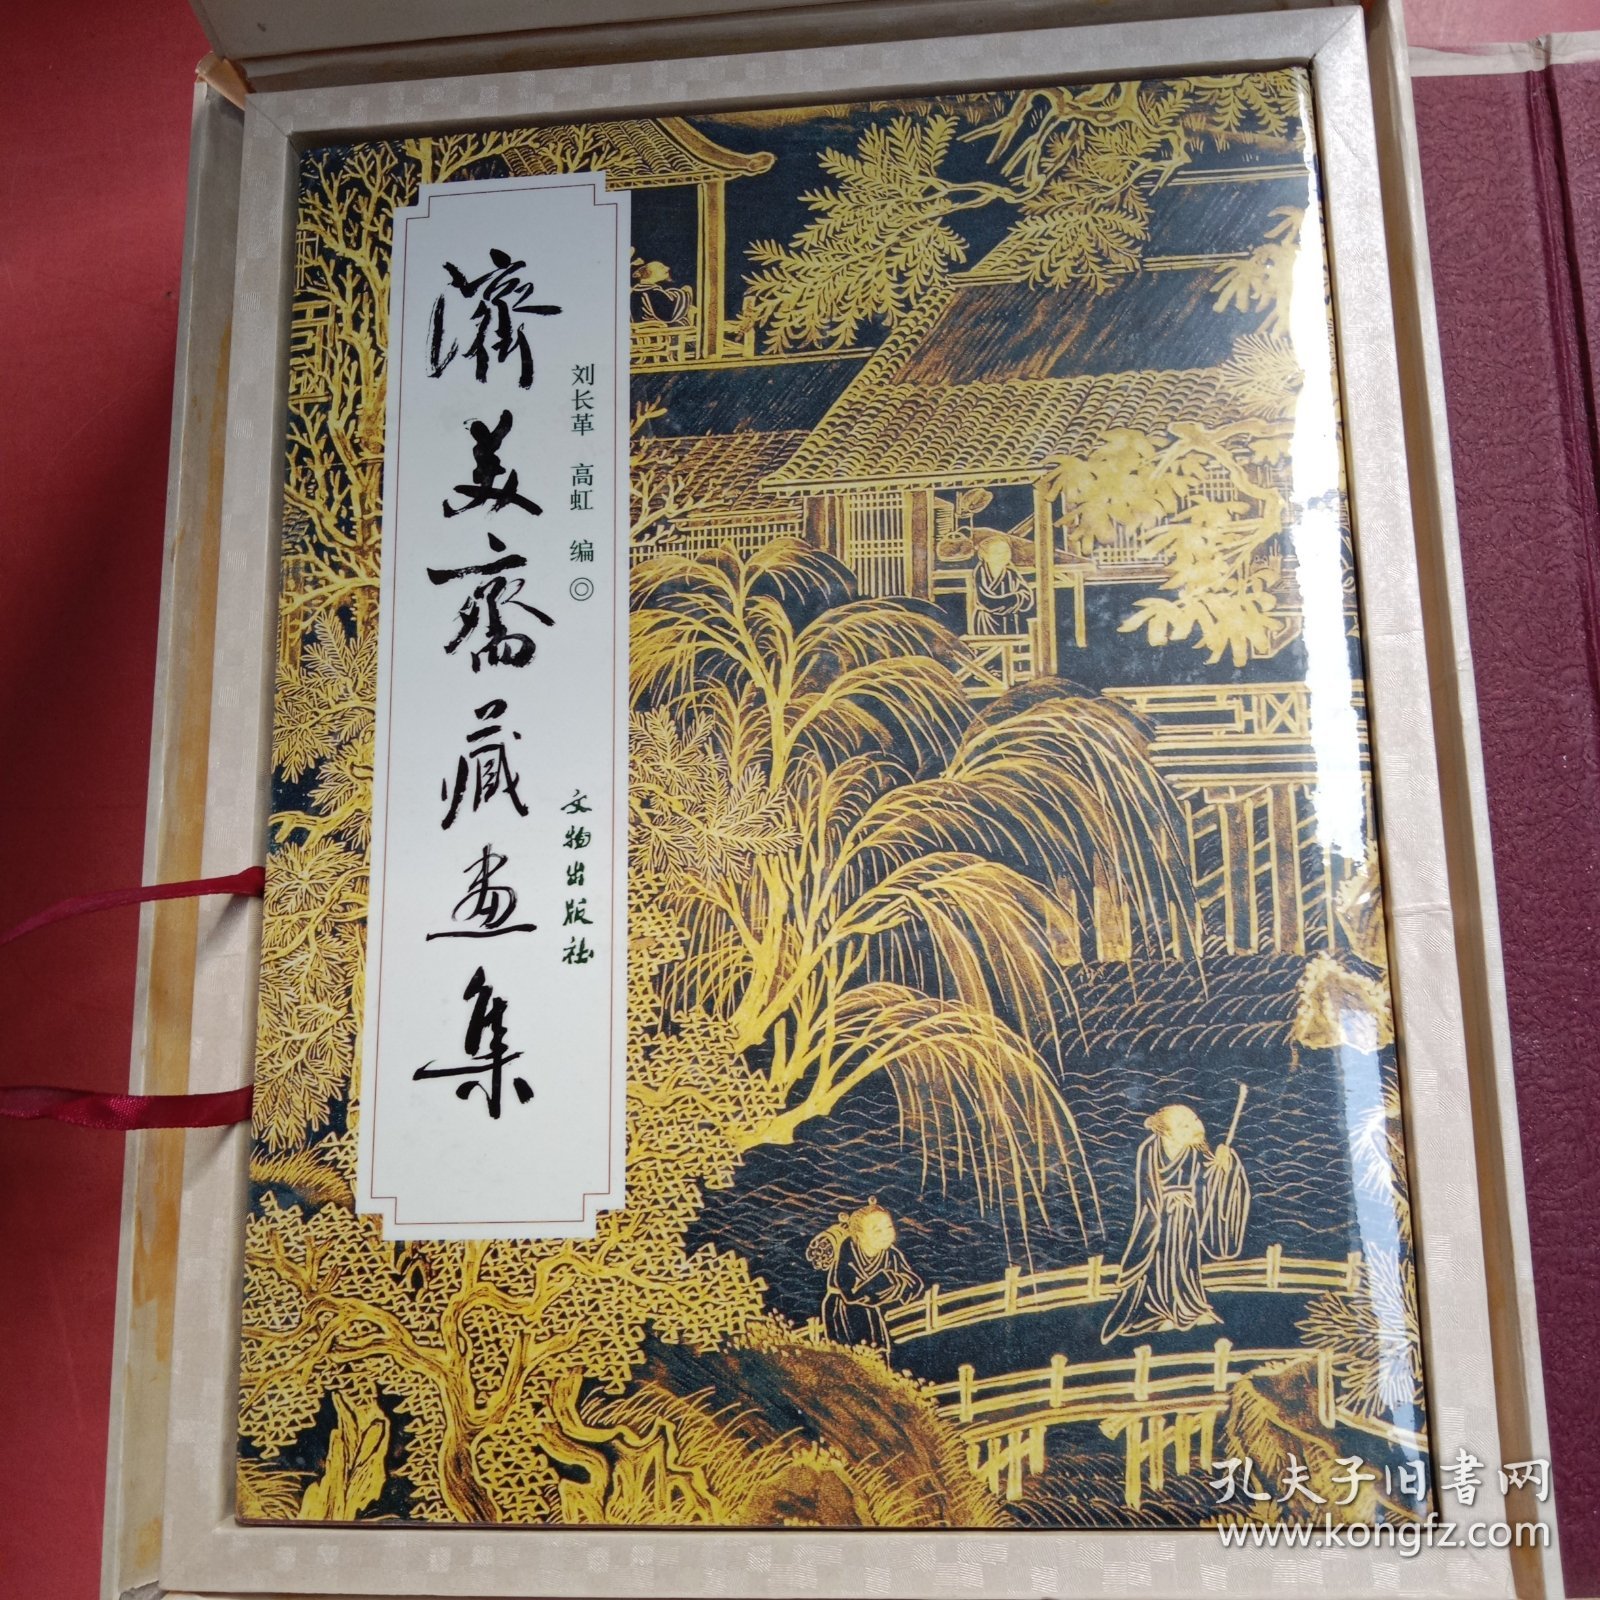 济美斋藏画集 外包装有破损 2.1千克